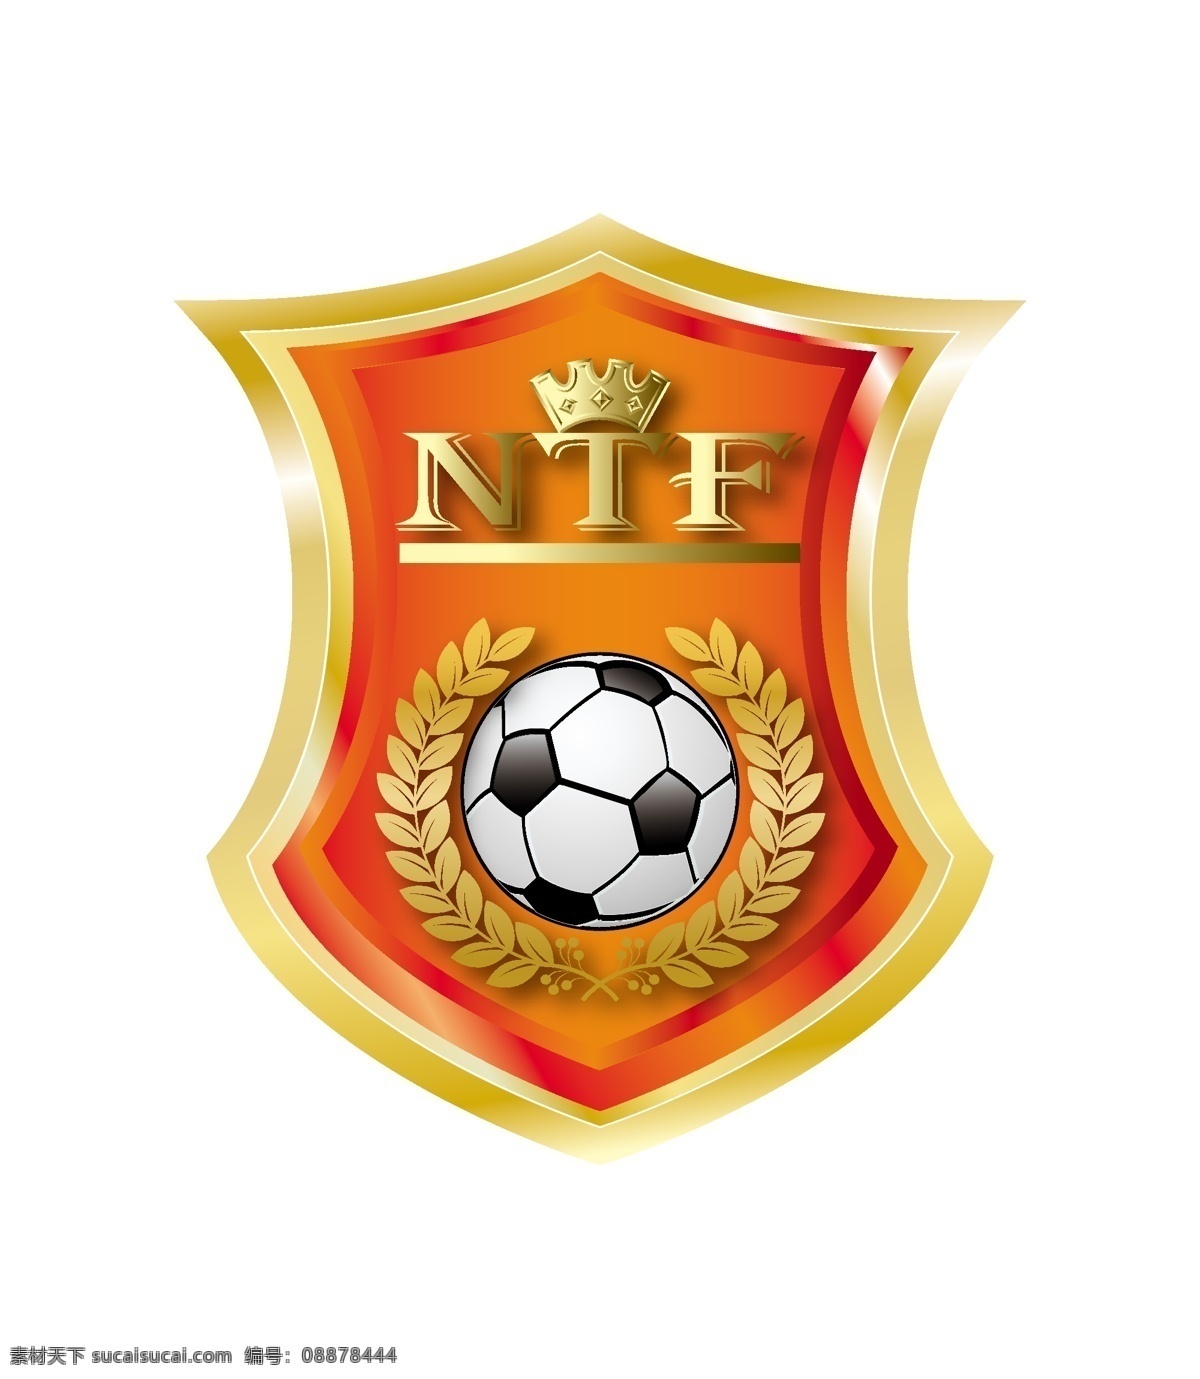 ntf 足球 标志 黄冠 企业 logo 标识标志图标 矢量